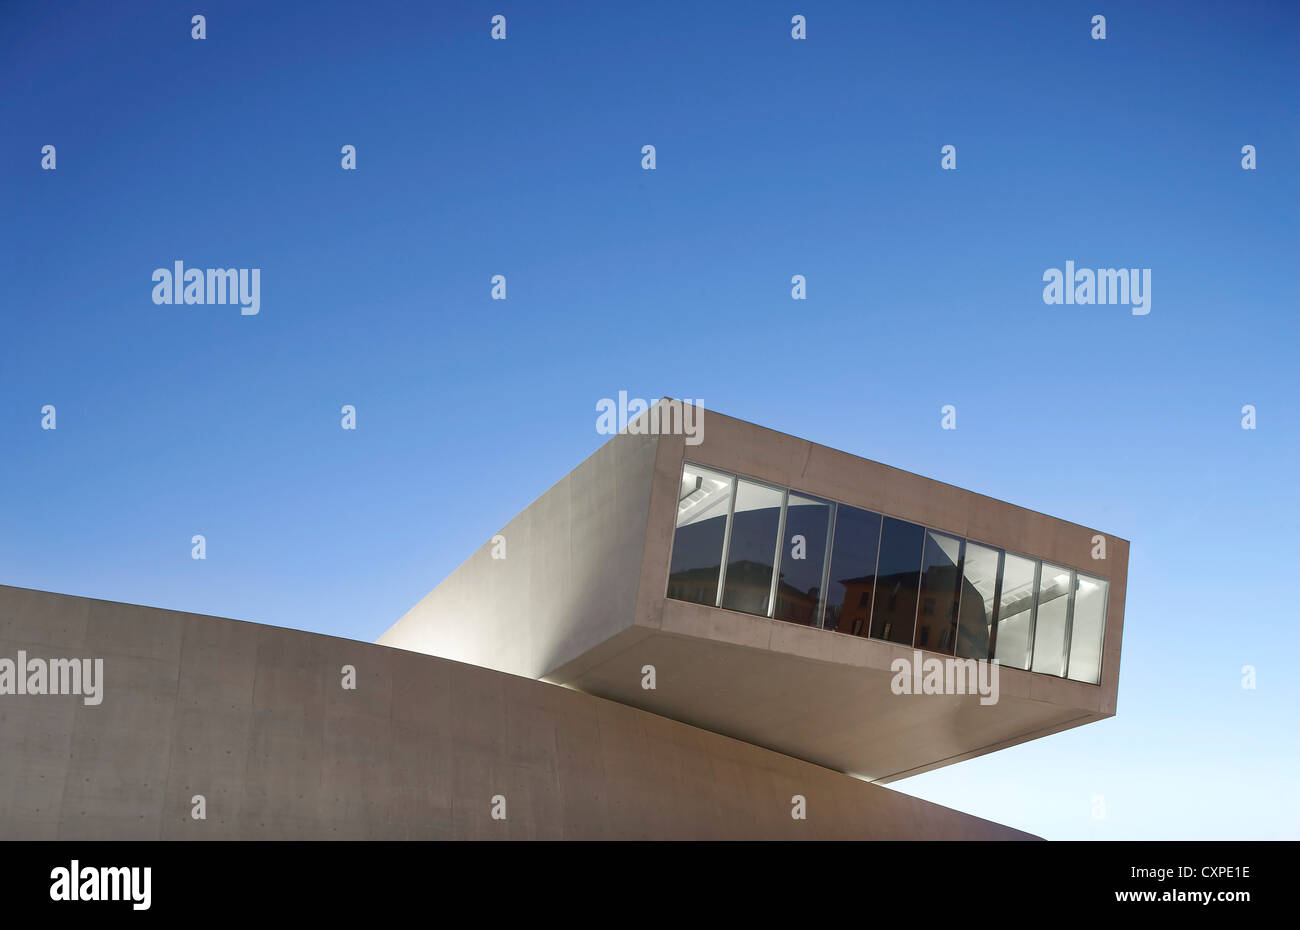 MAXXI – Nationalmuseum für das 21. Jahrhundert Kunst, Rom, Italien. Architekt: Zaha Hadid Architects, 2009. Abenddämmerung äußere Detail. Stockfoto